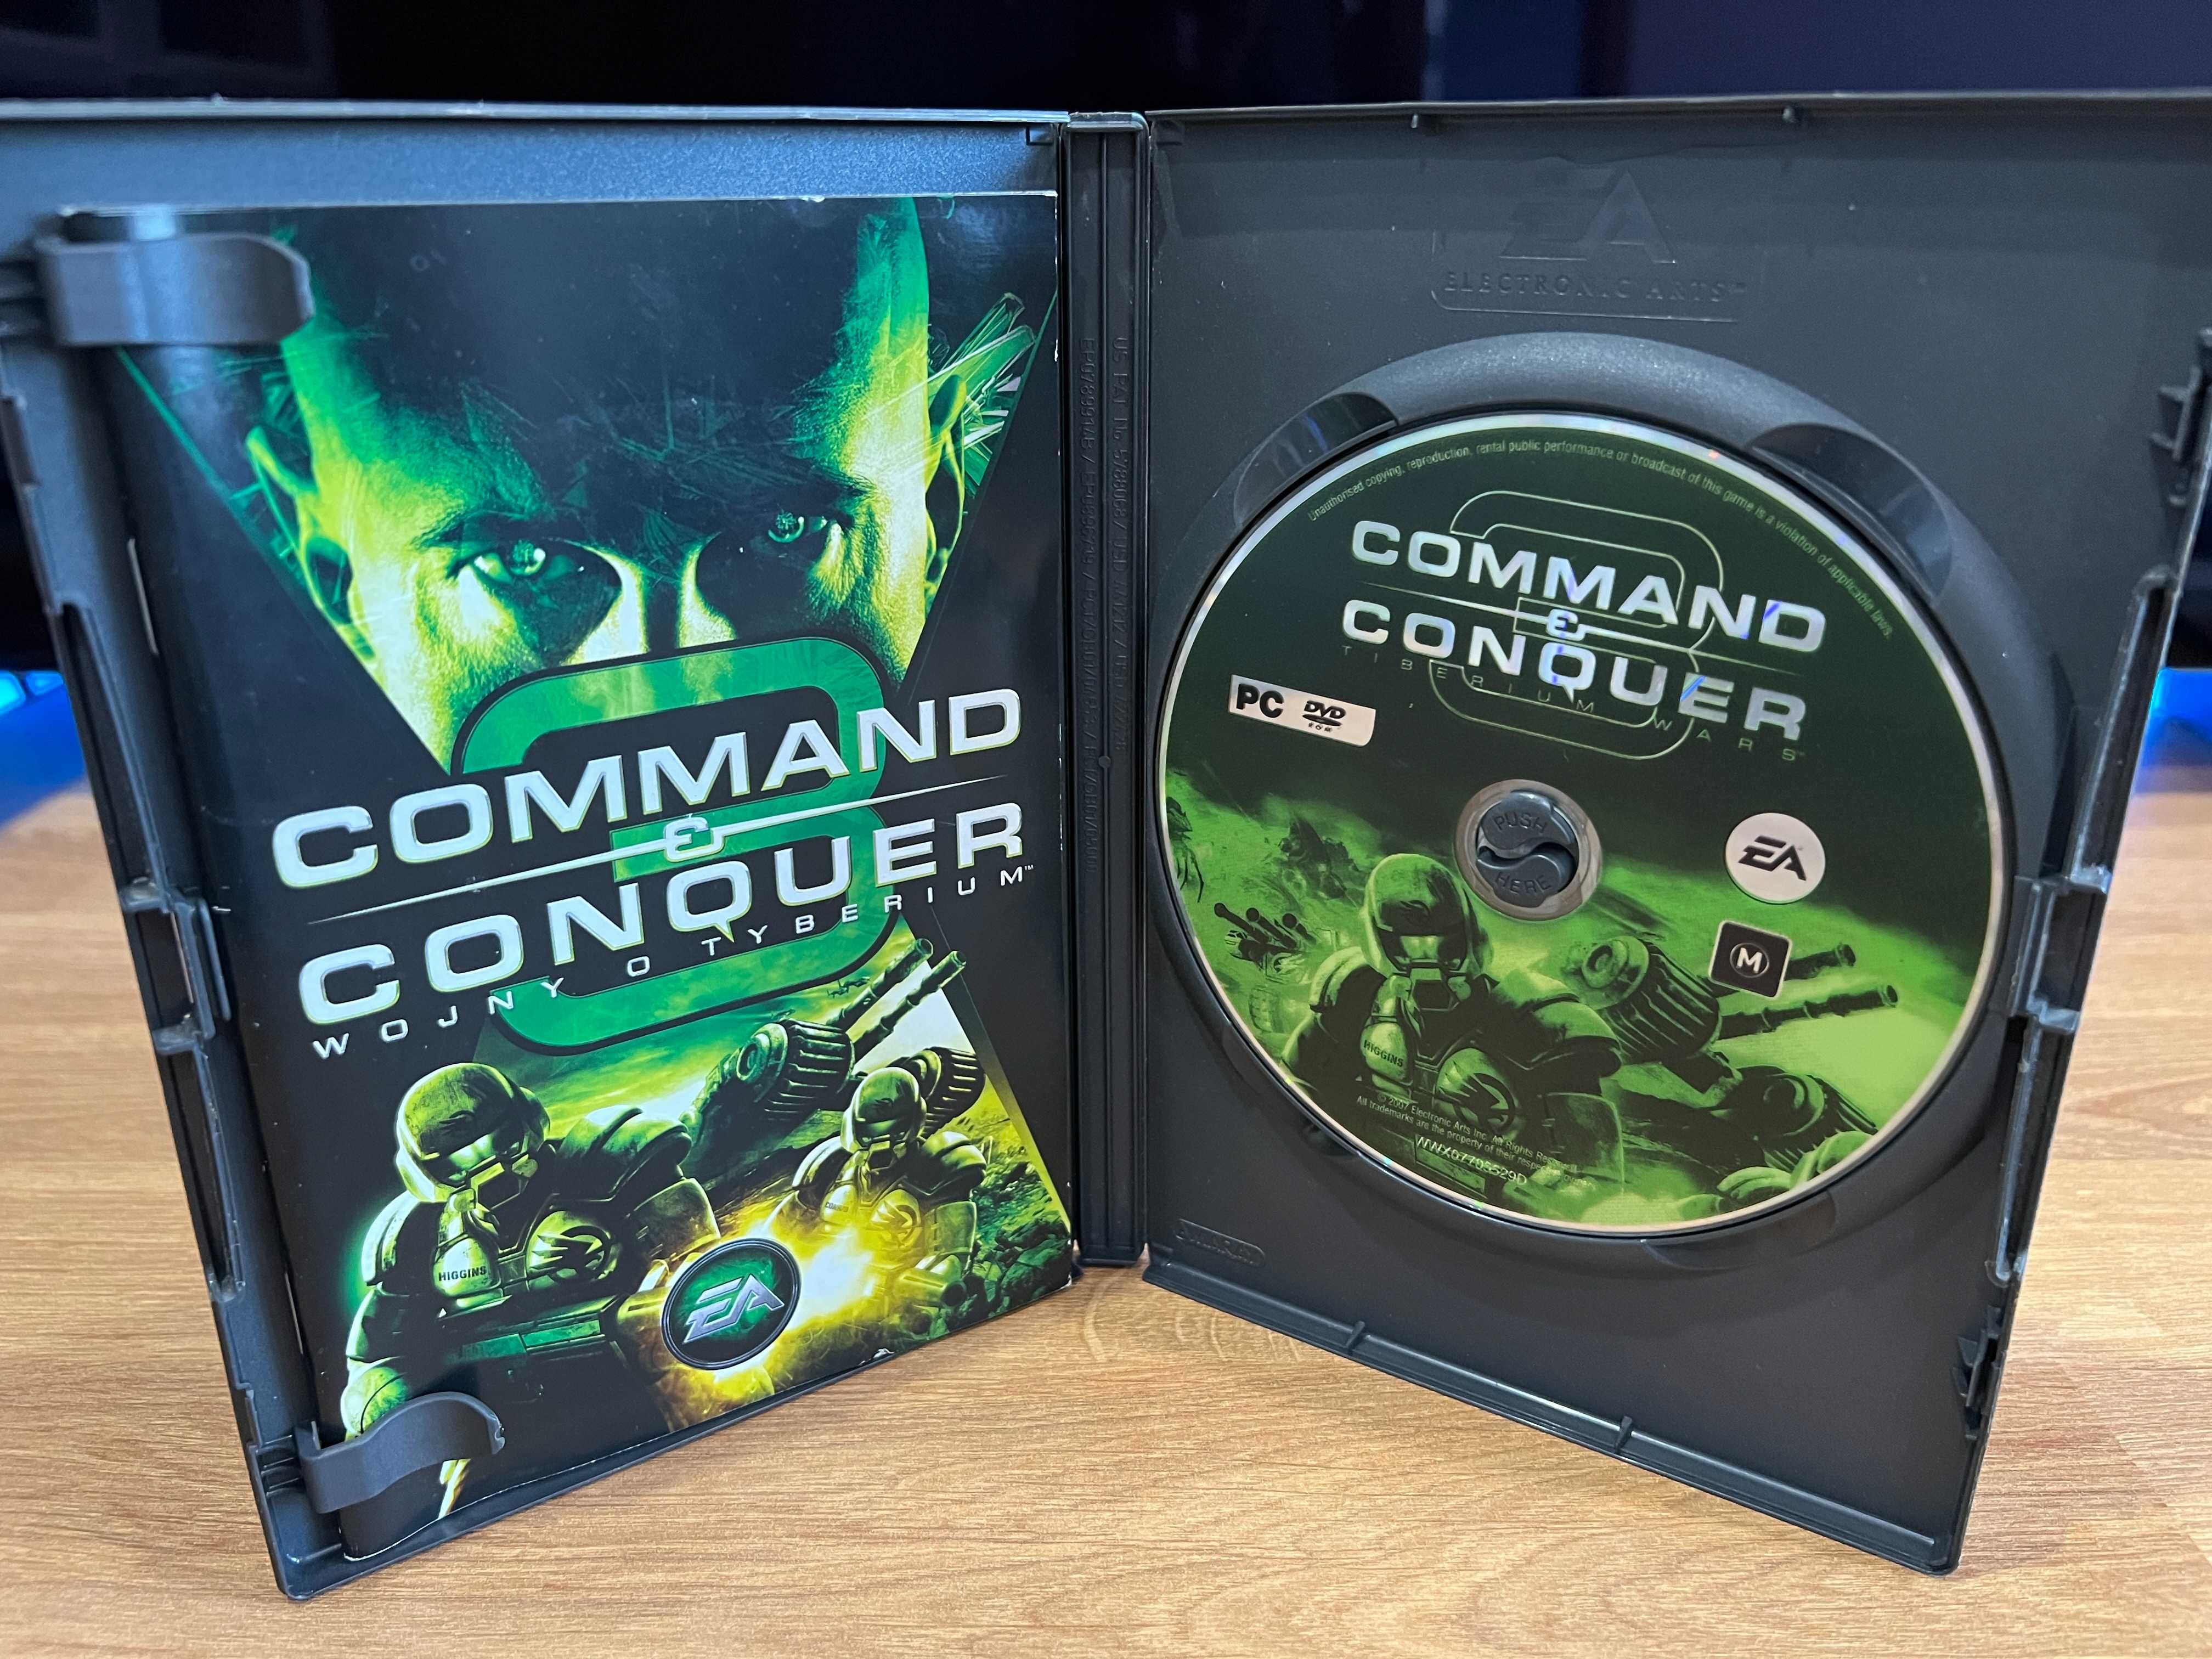 Command & Conquer 3 Wojny o Tyberium (PC PL 2007) premierowe wydanie